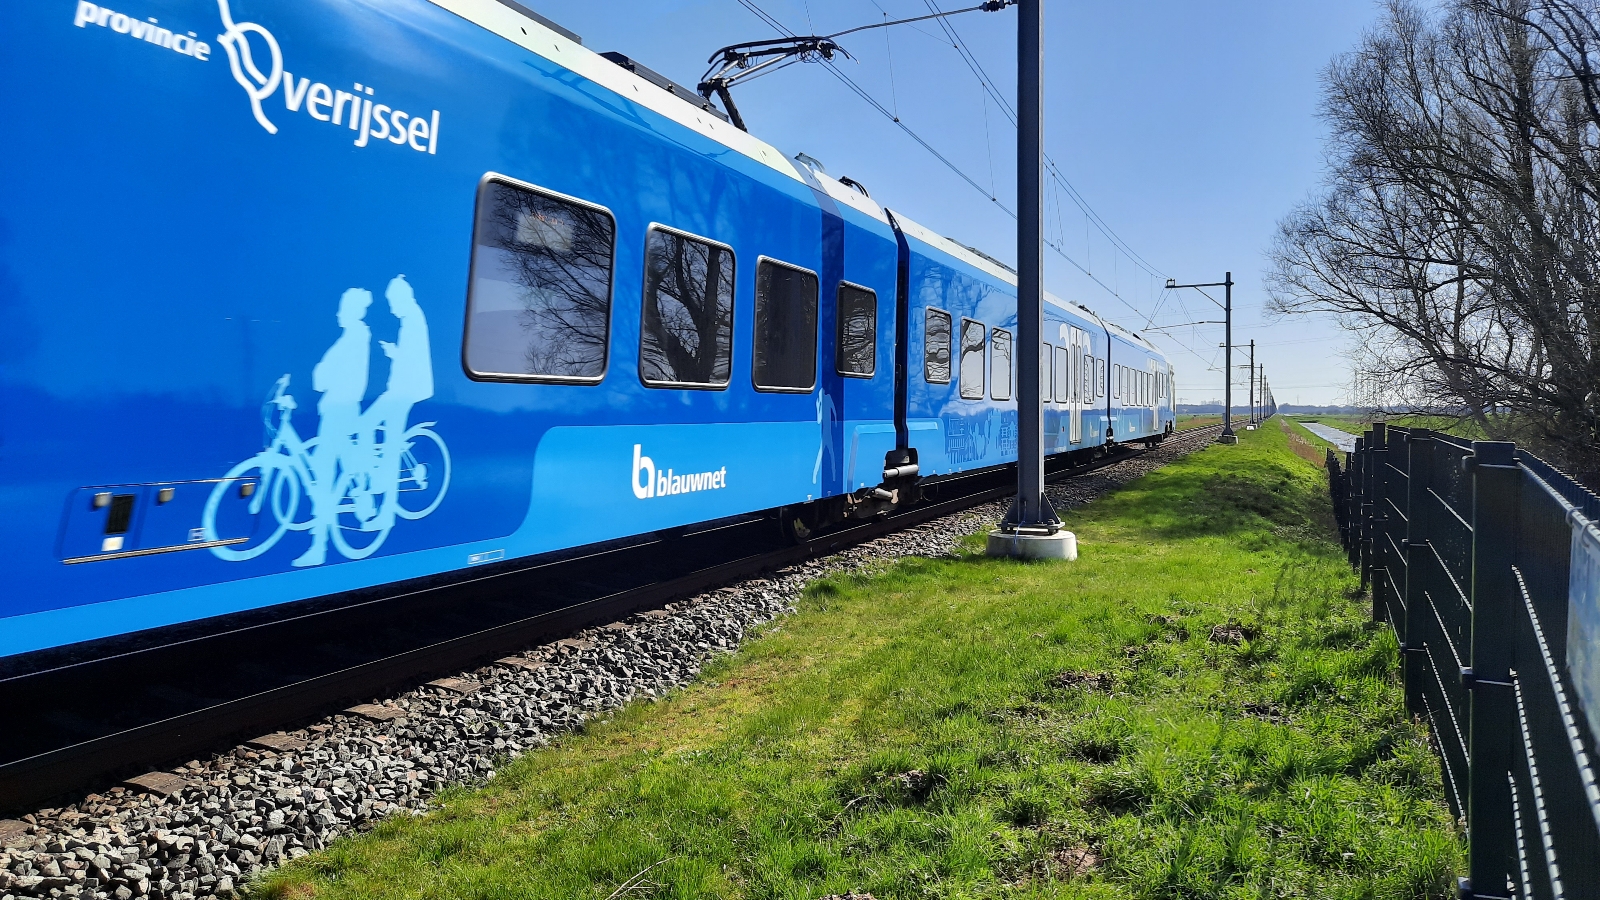 Inspecteren Avondeten Merchandiser Herken de Keolis Blauwnet treinen nu nog makkelijker door treinnummers -  RTV Focus